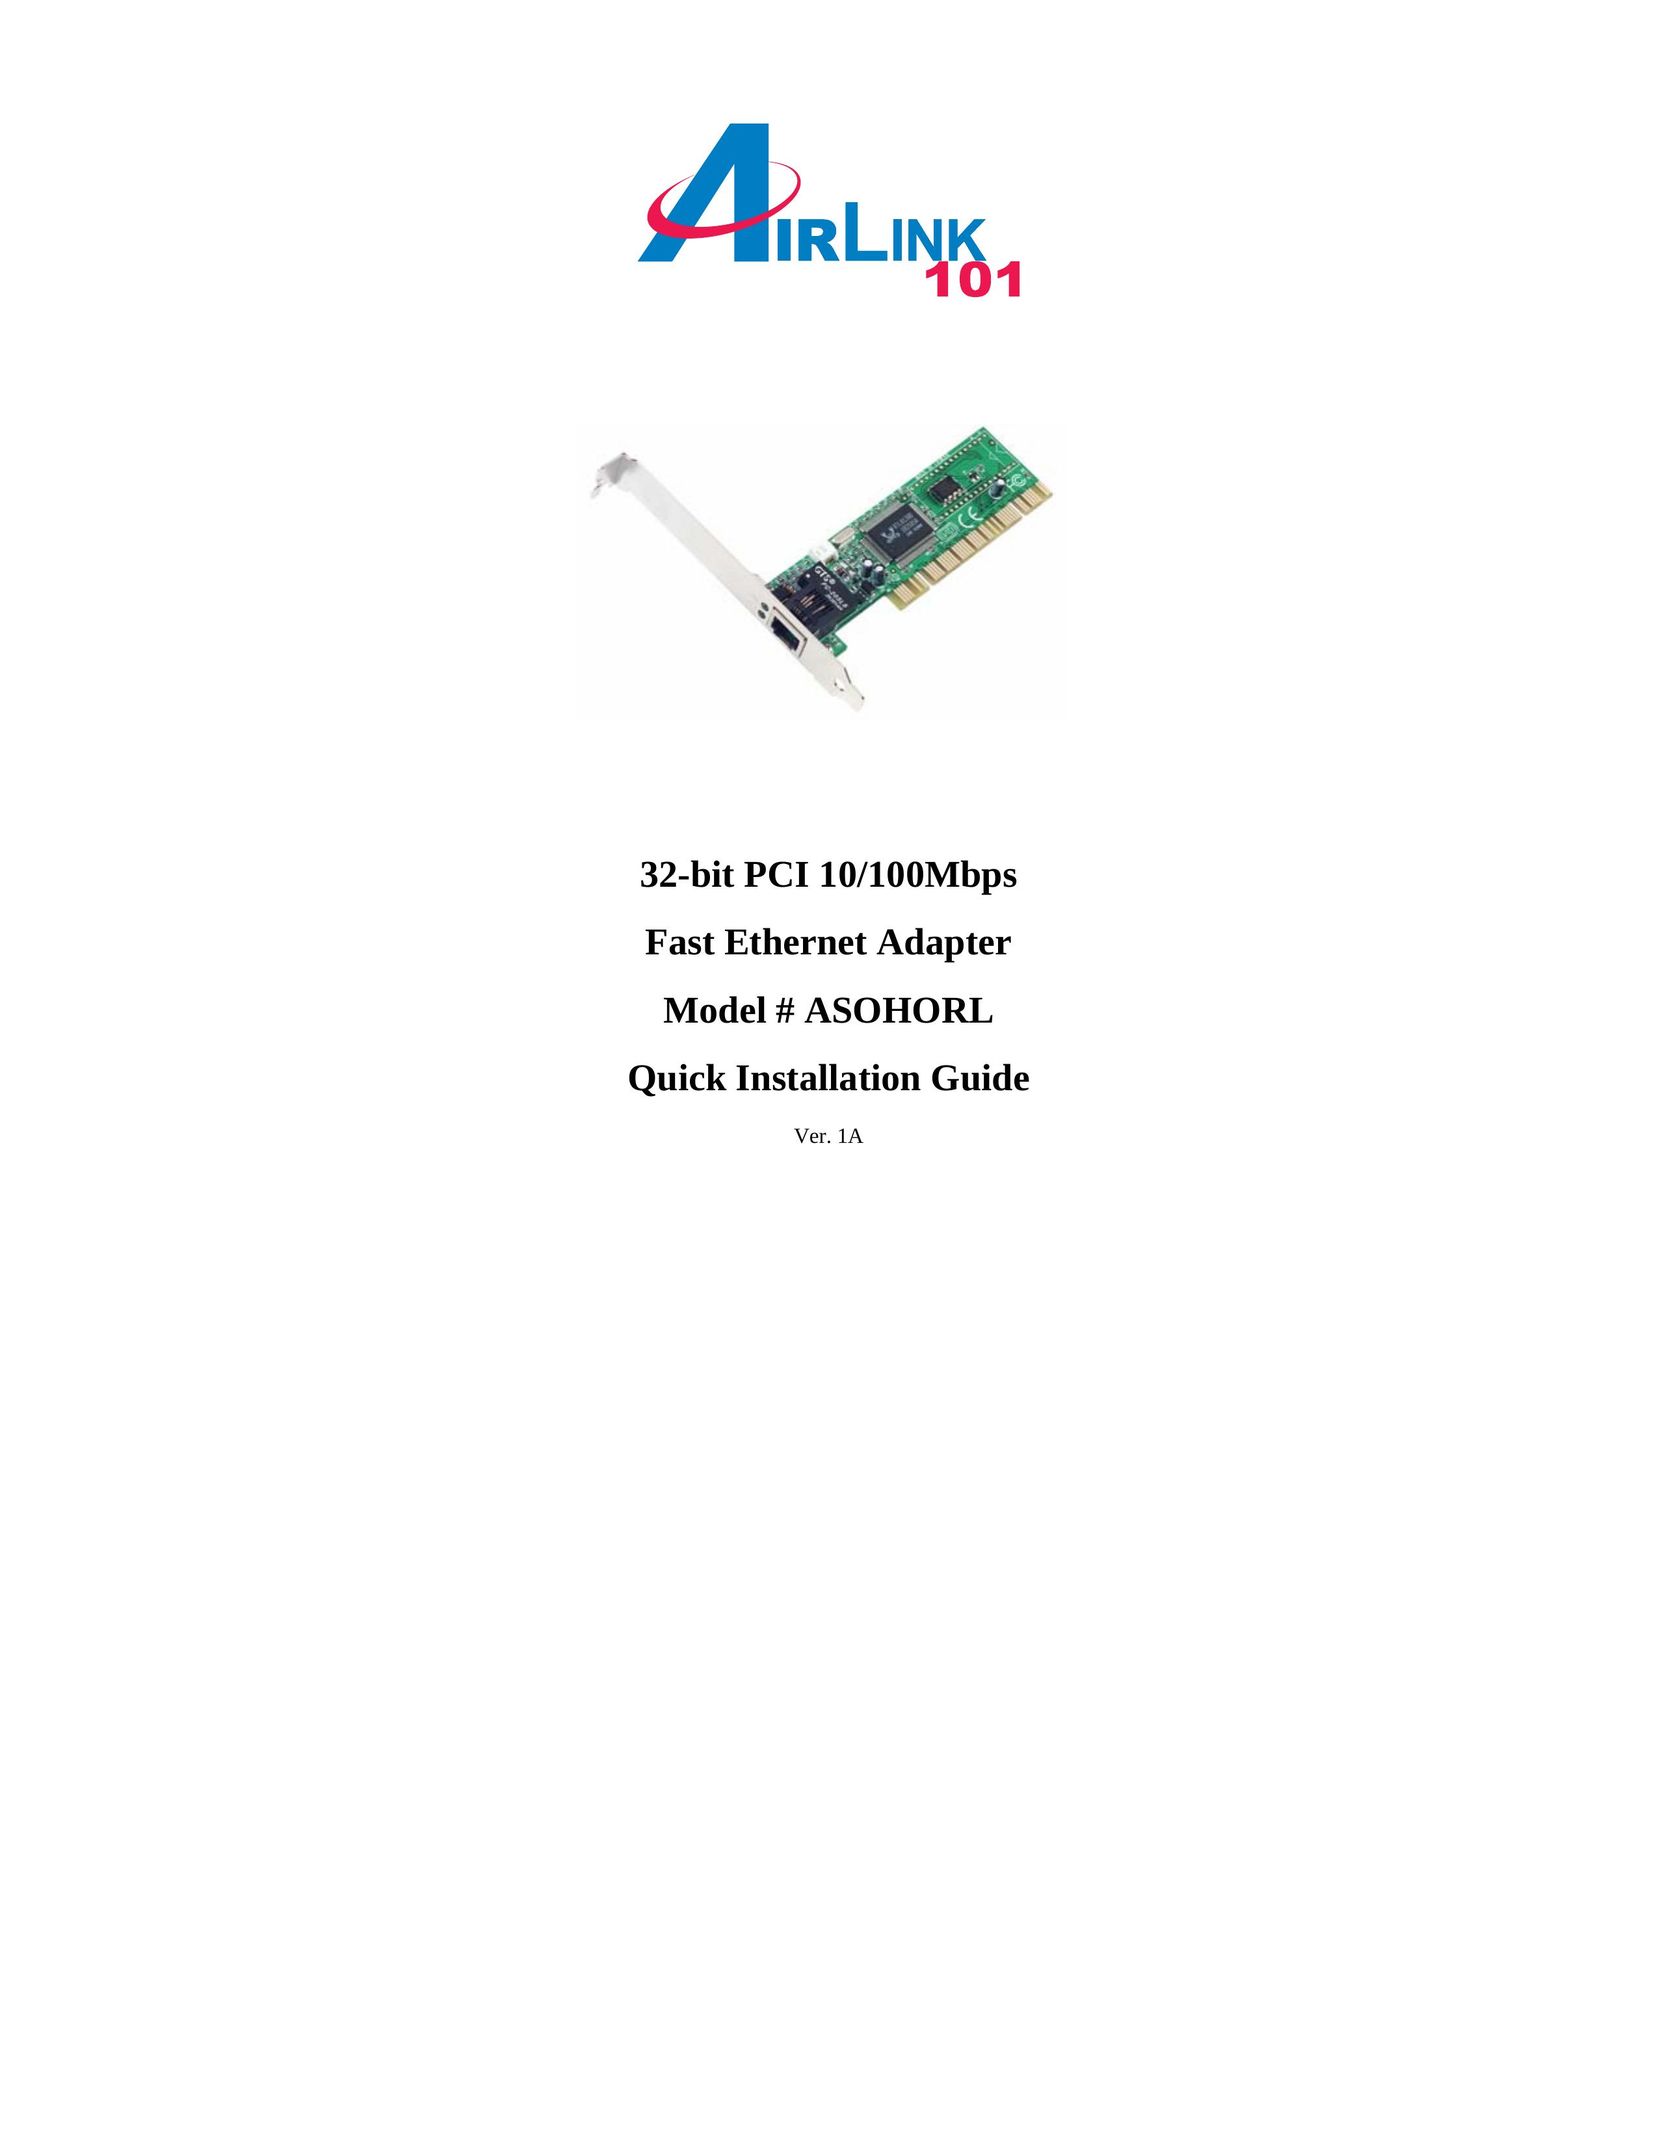 Airlink101 ASOHORL Network Card User Manual